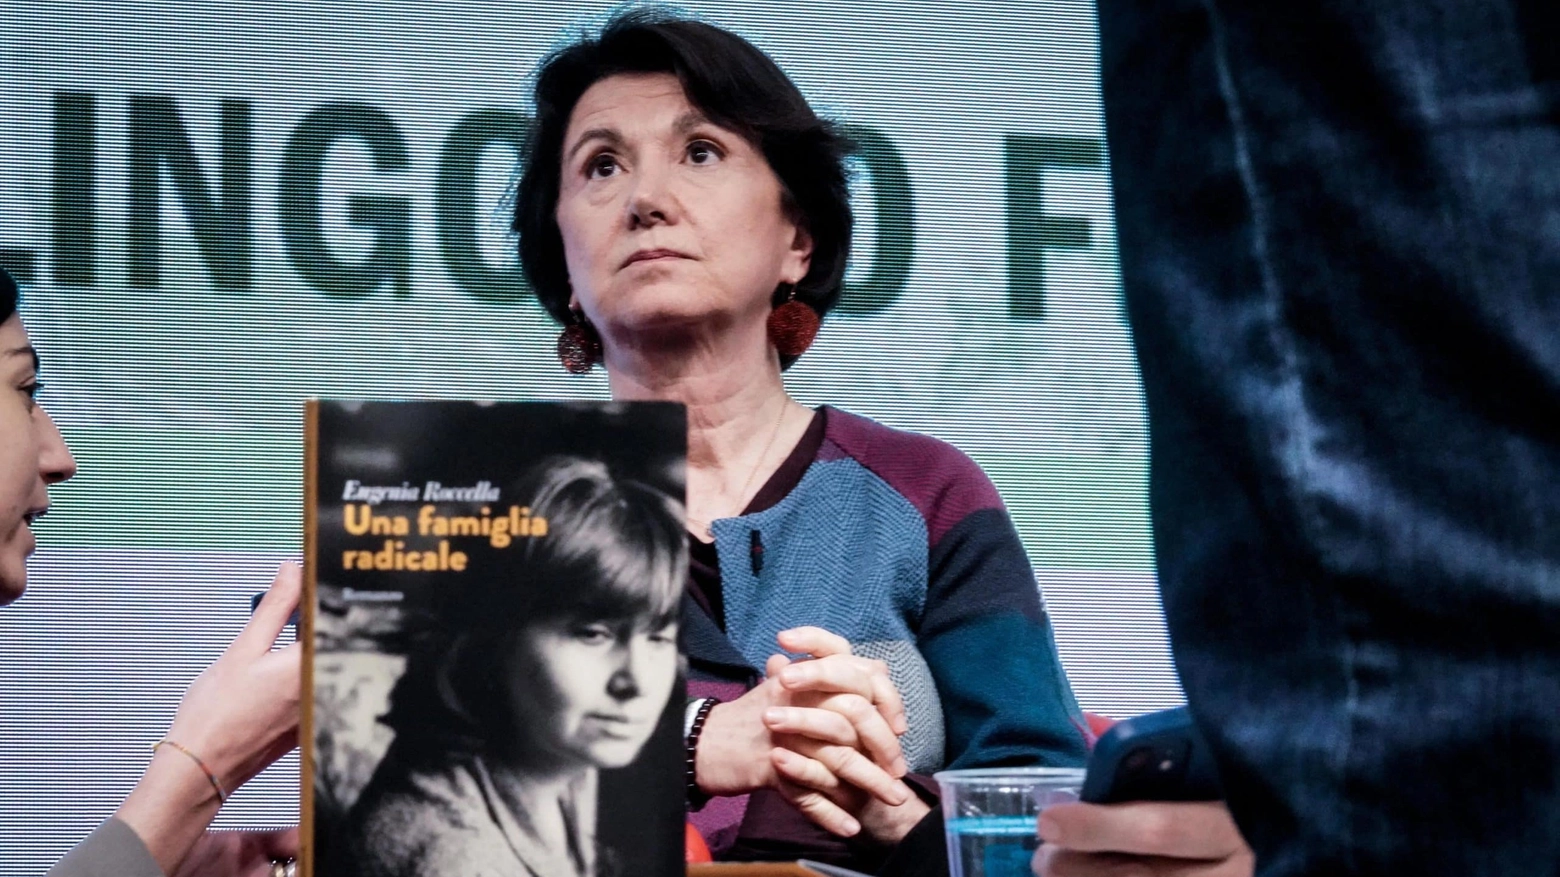 Attiviste contestano ministra Roccella al Salone del libro